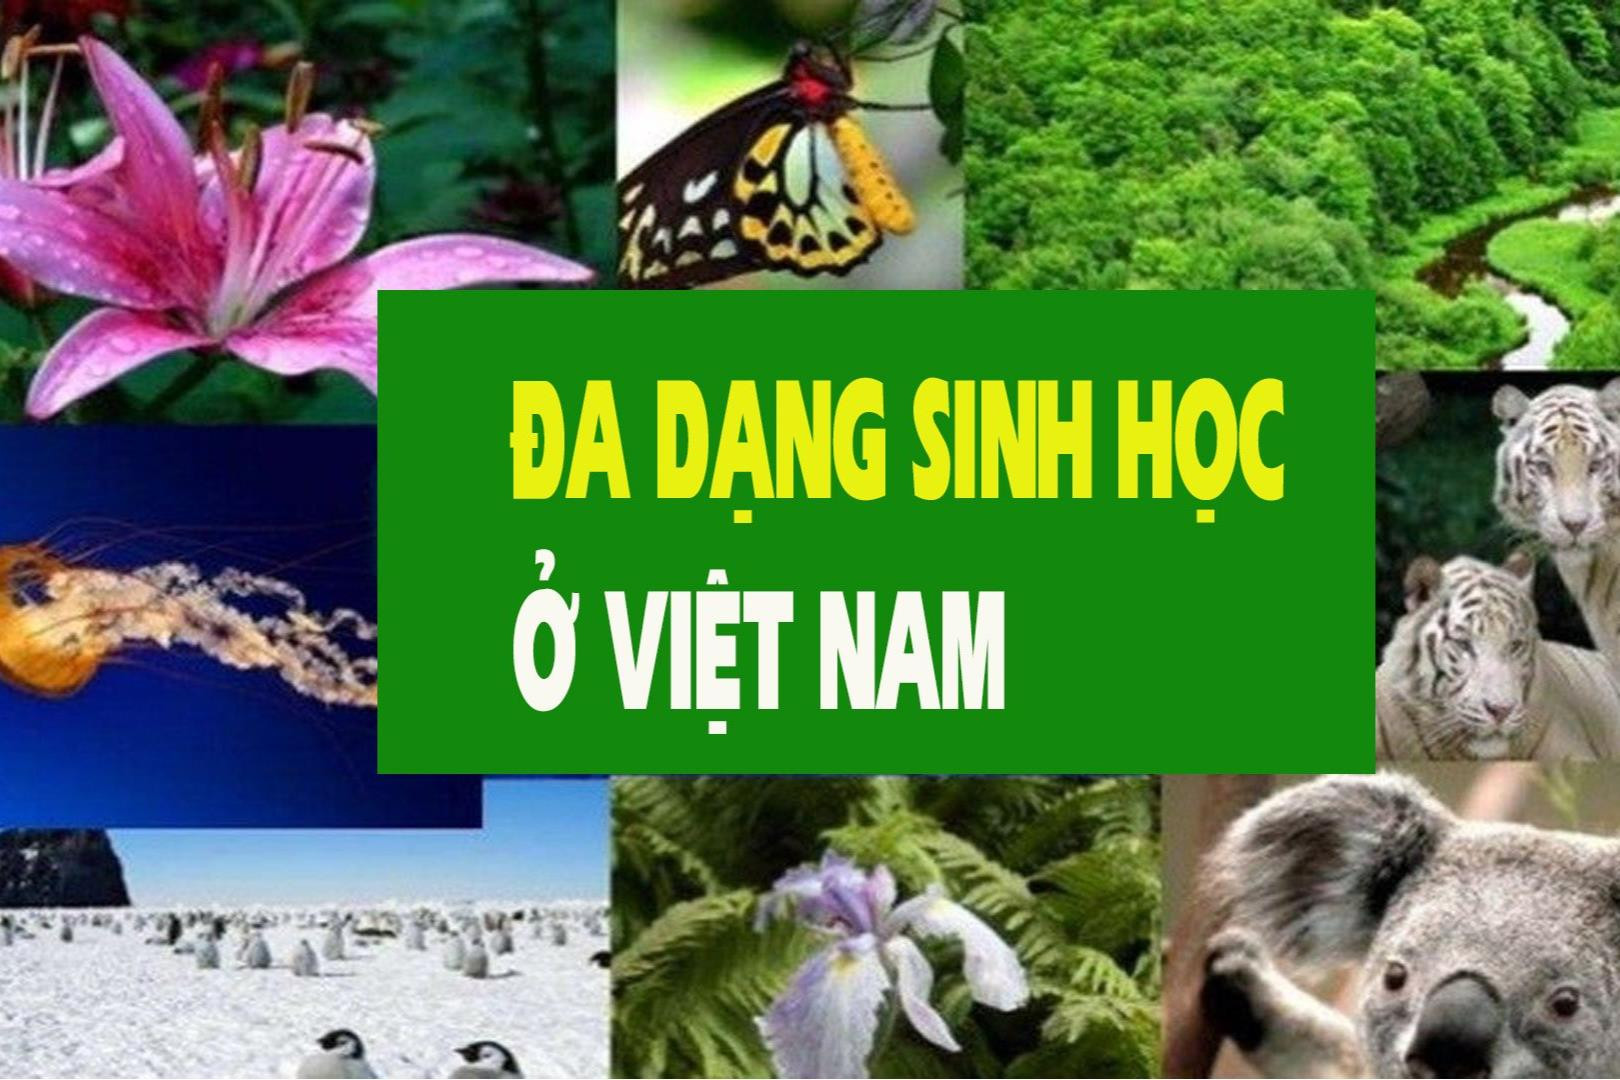 Đa dạng sinh học ở Việt Nam: Thực trạng và các giải pháp -